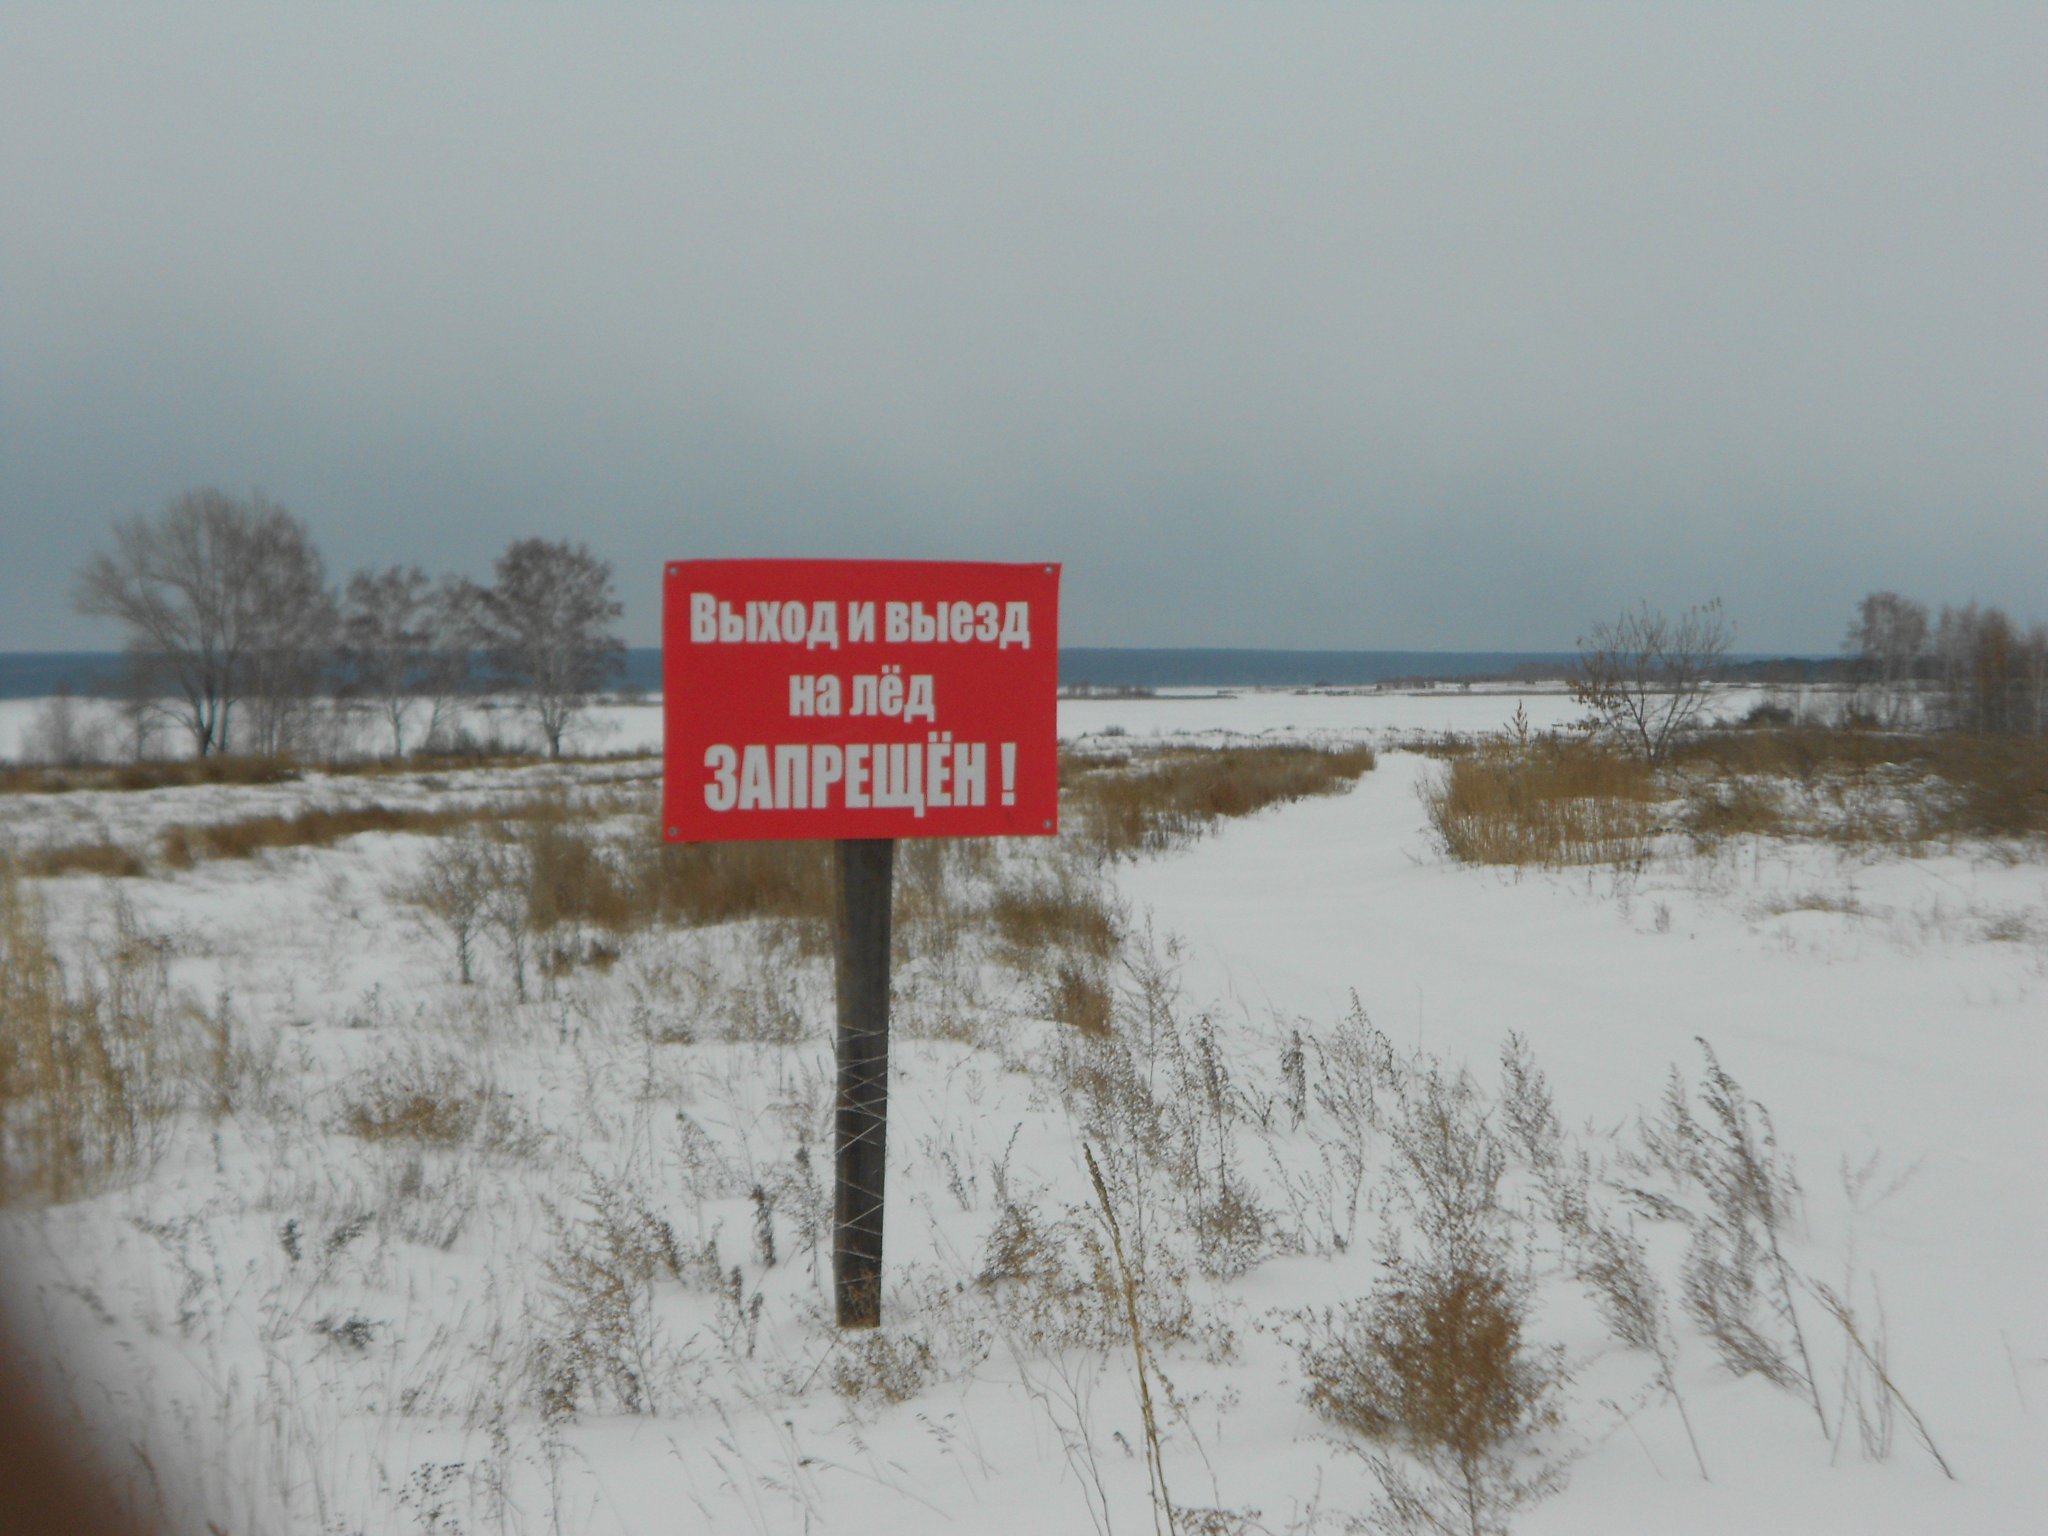 Запрет выезда на лед. Выход на лед запрещен. Выход и выезд на лед запрещен. Выход на лед запрещен табличка.